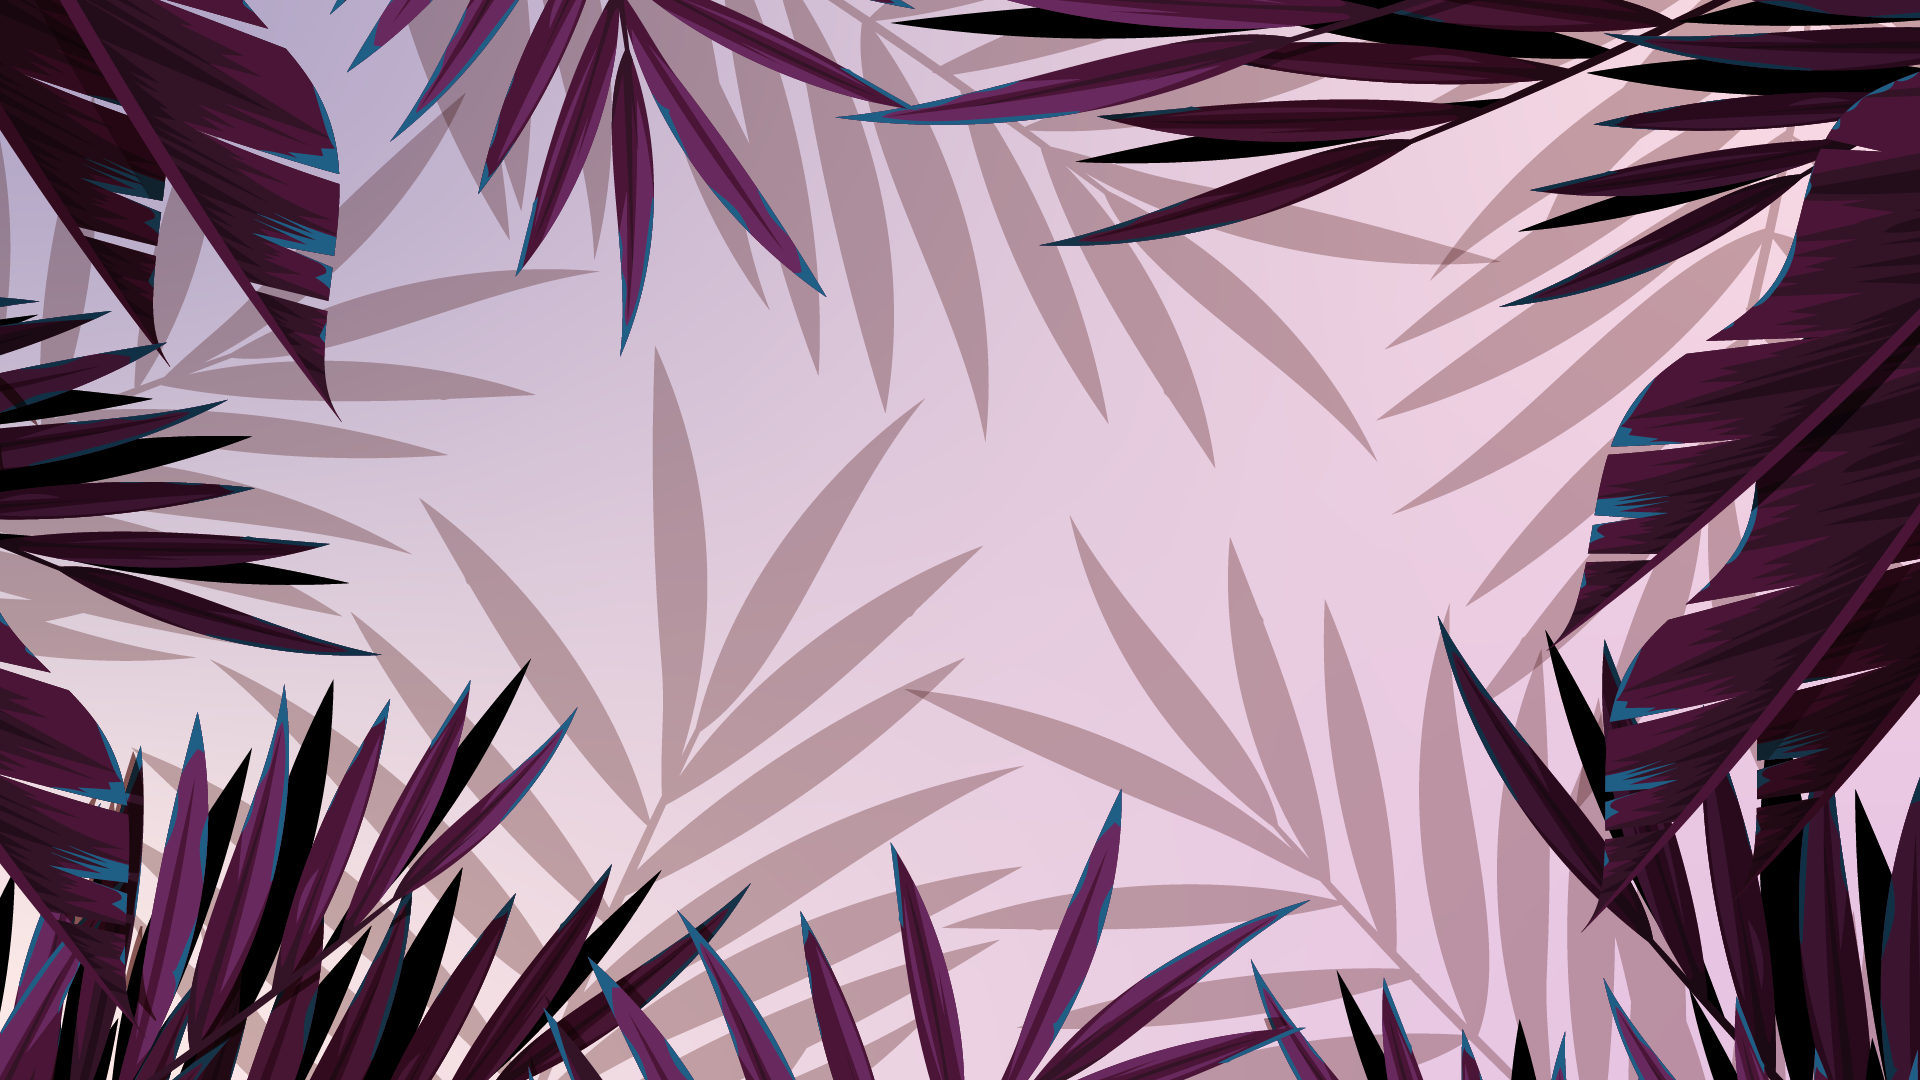 Aesthetic pc wallpaper 4k - palm leaves